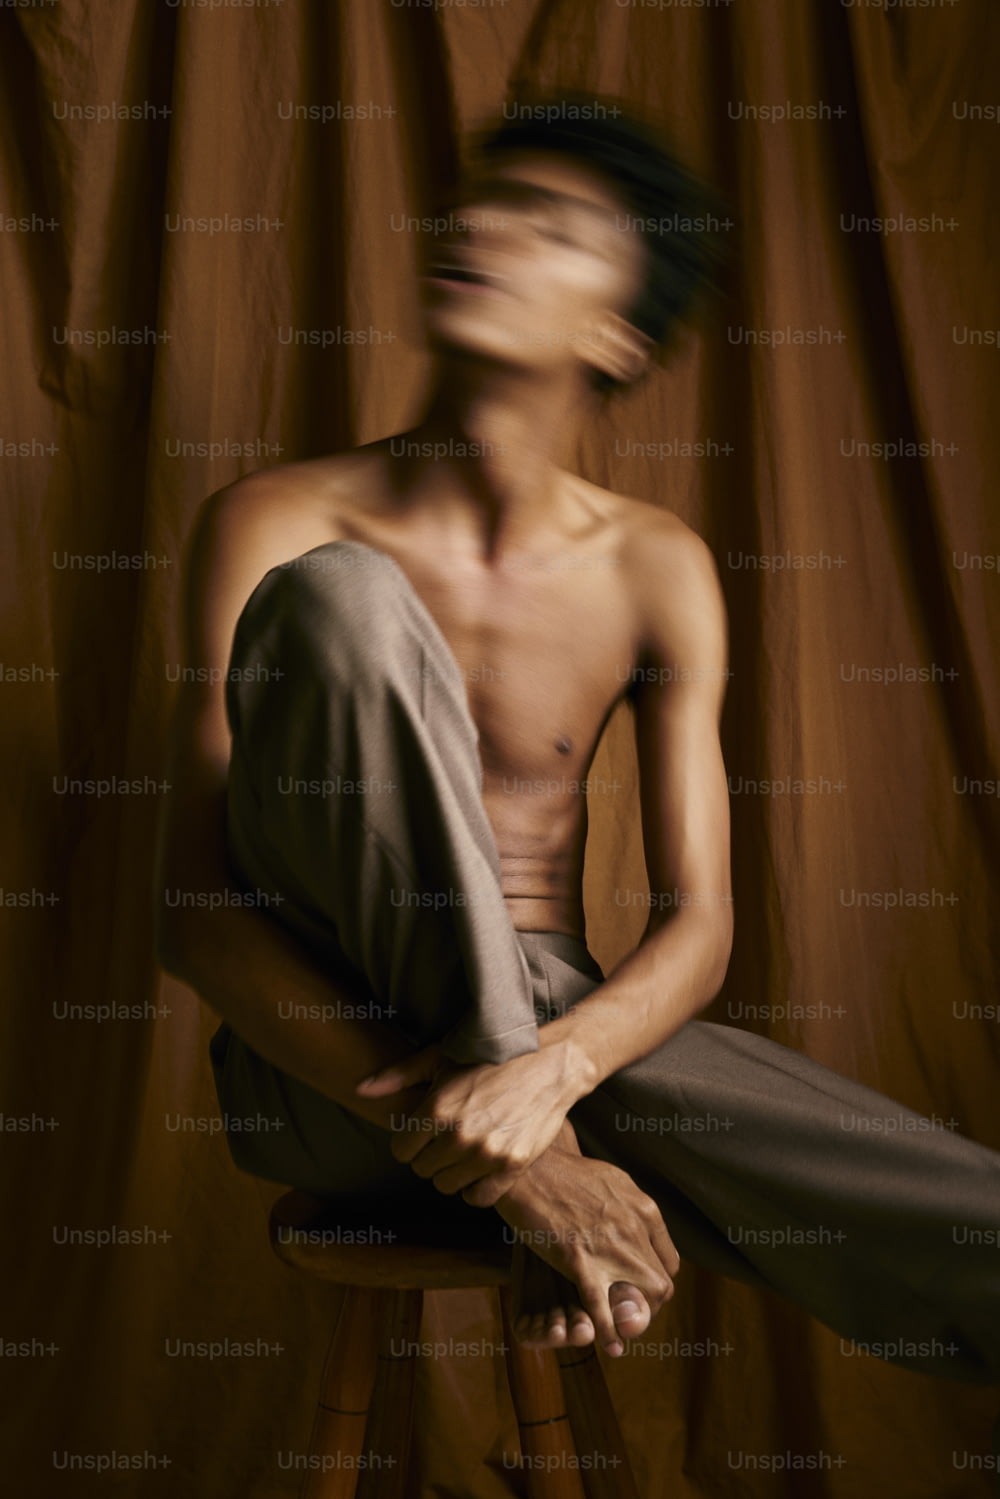 カーテンの前のスツールに座っている上半身裸の男